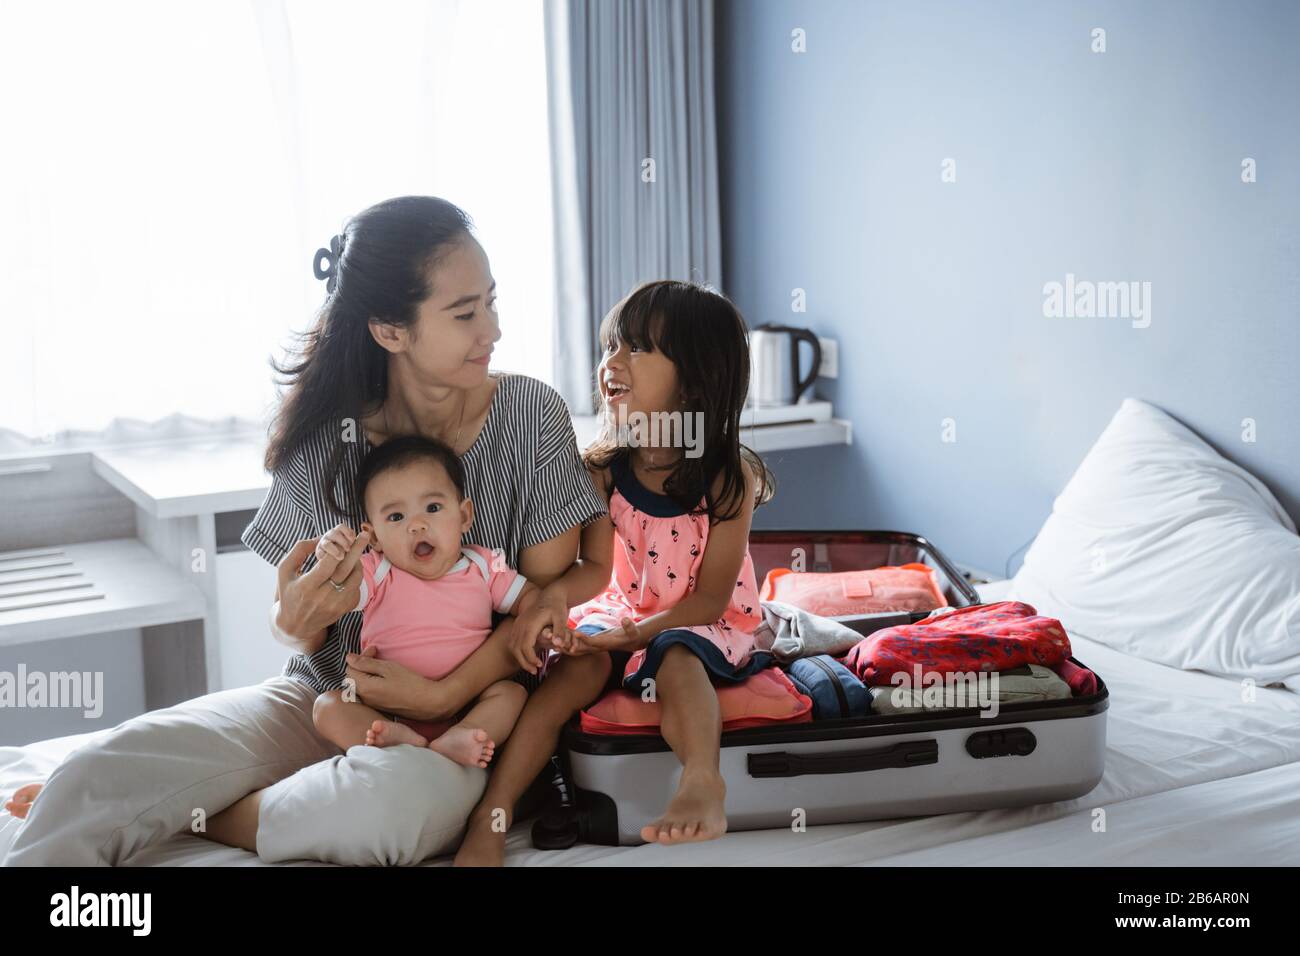 Asiatische Mutter chattet mit ihren beiden Kindern, nachdem sie einen Koffer für den Urlaub vorbereitet hat Stockfoto